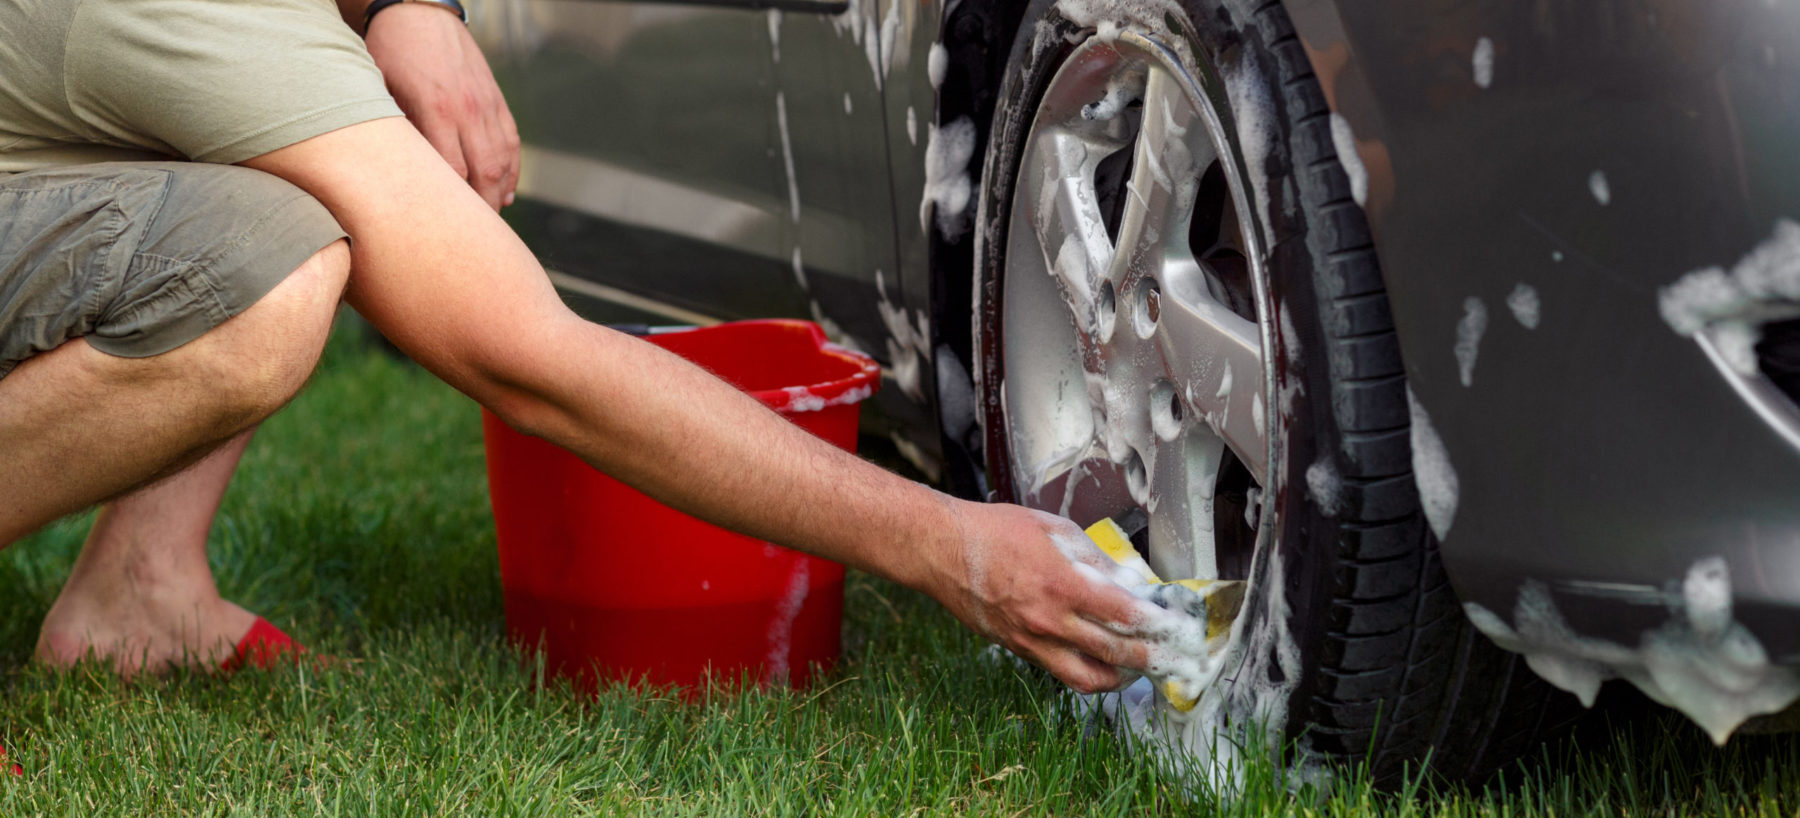 Man washing a car.